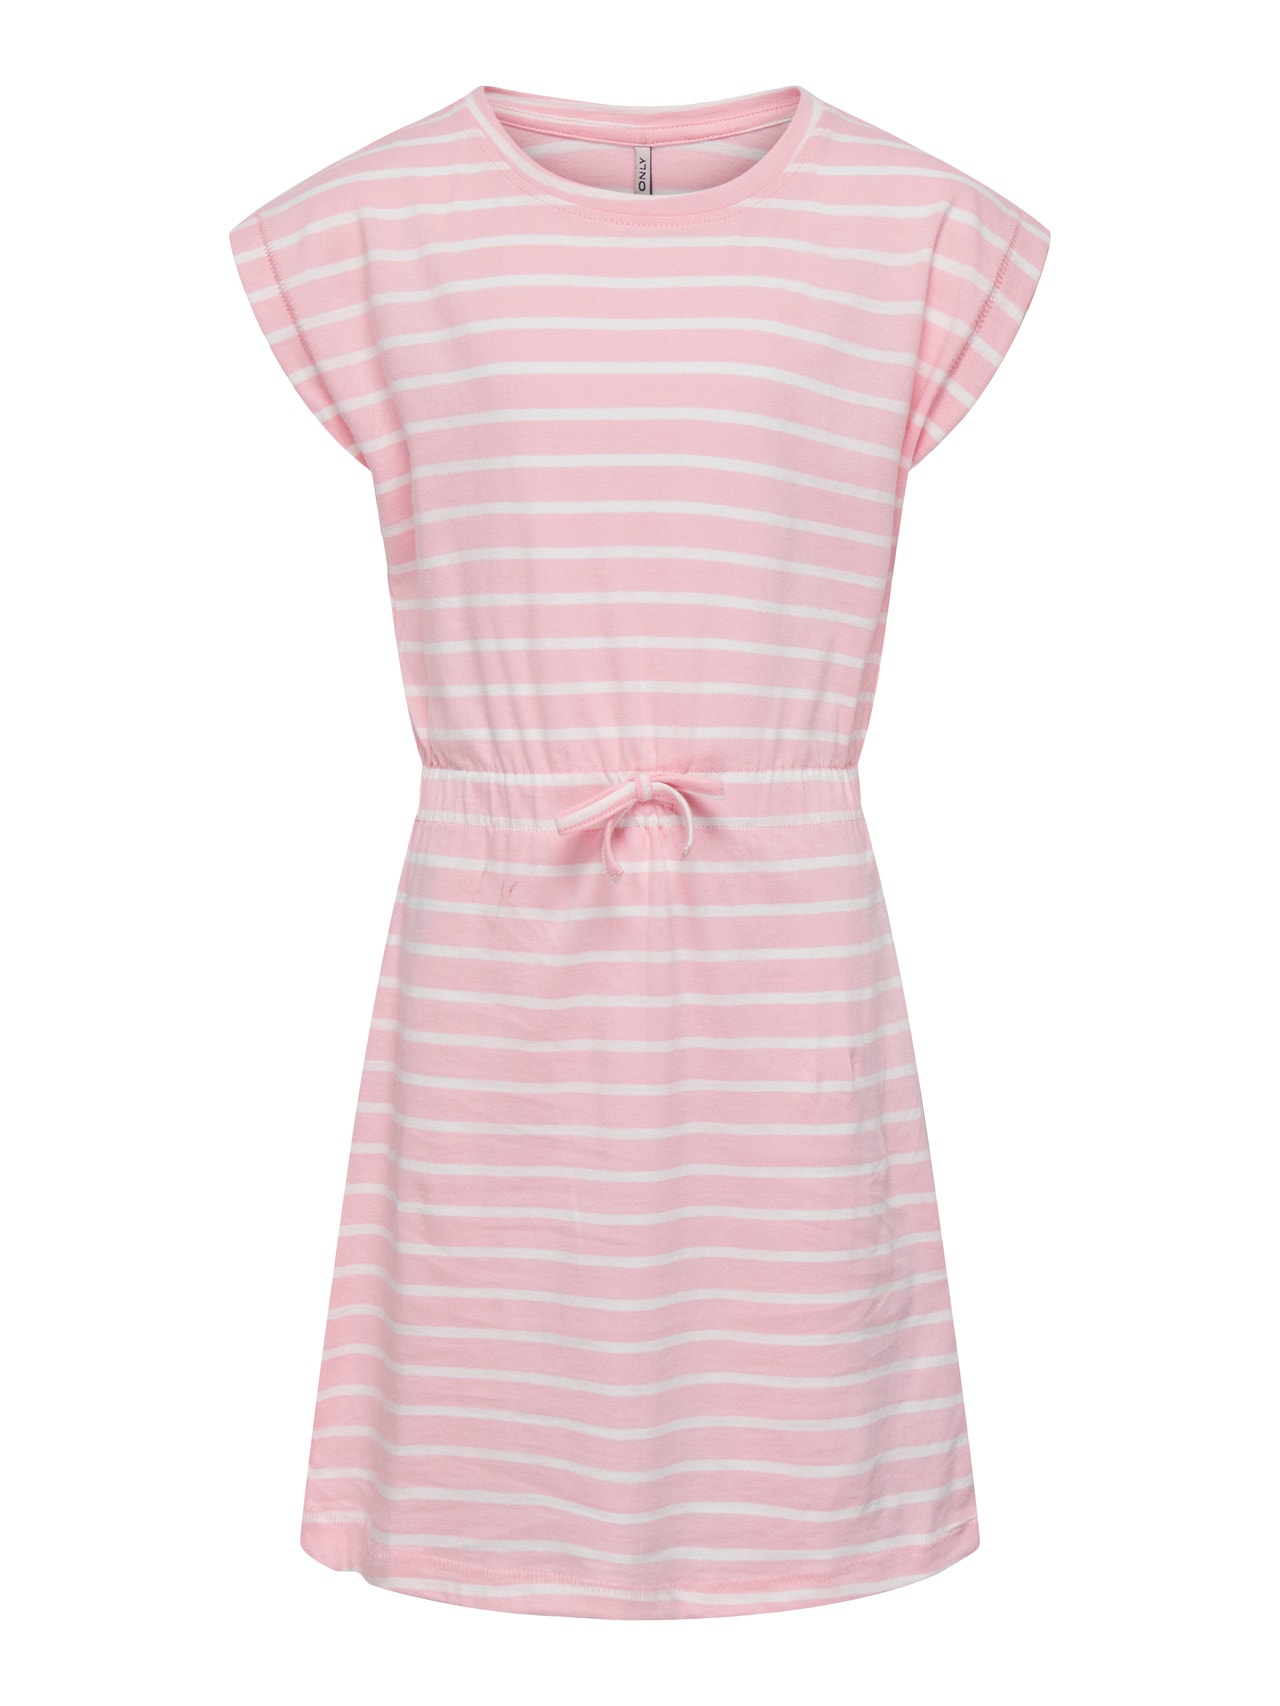 ONLY Short sleeved Dress -Tickled Pink - 15292994